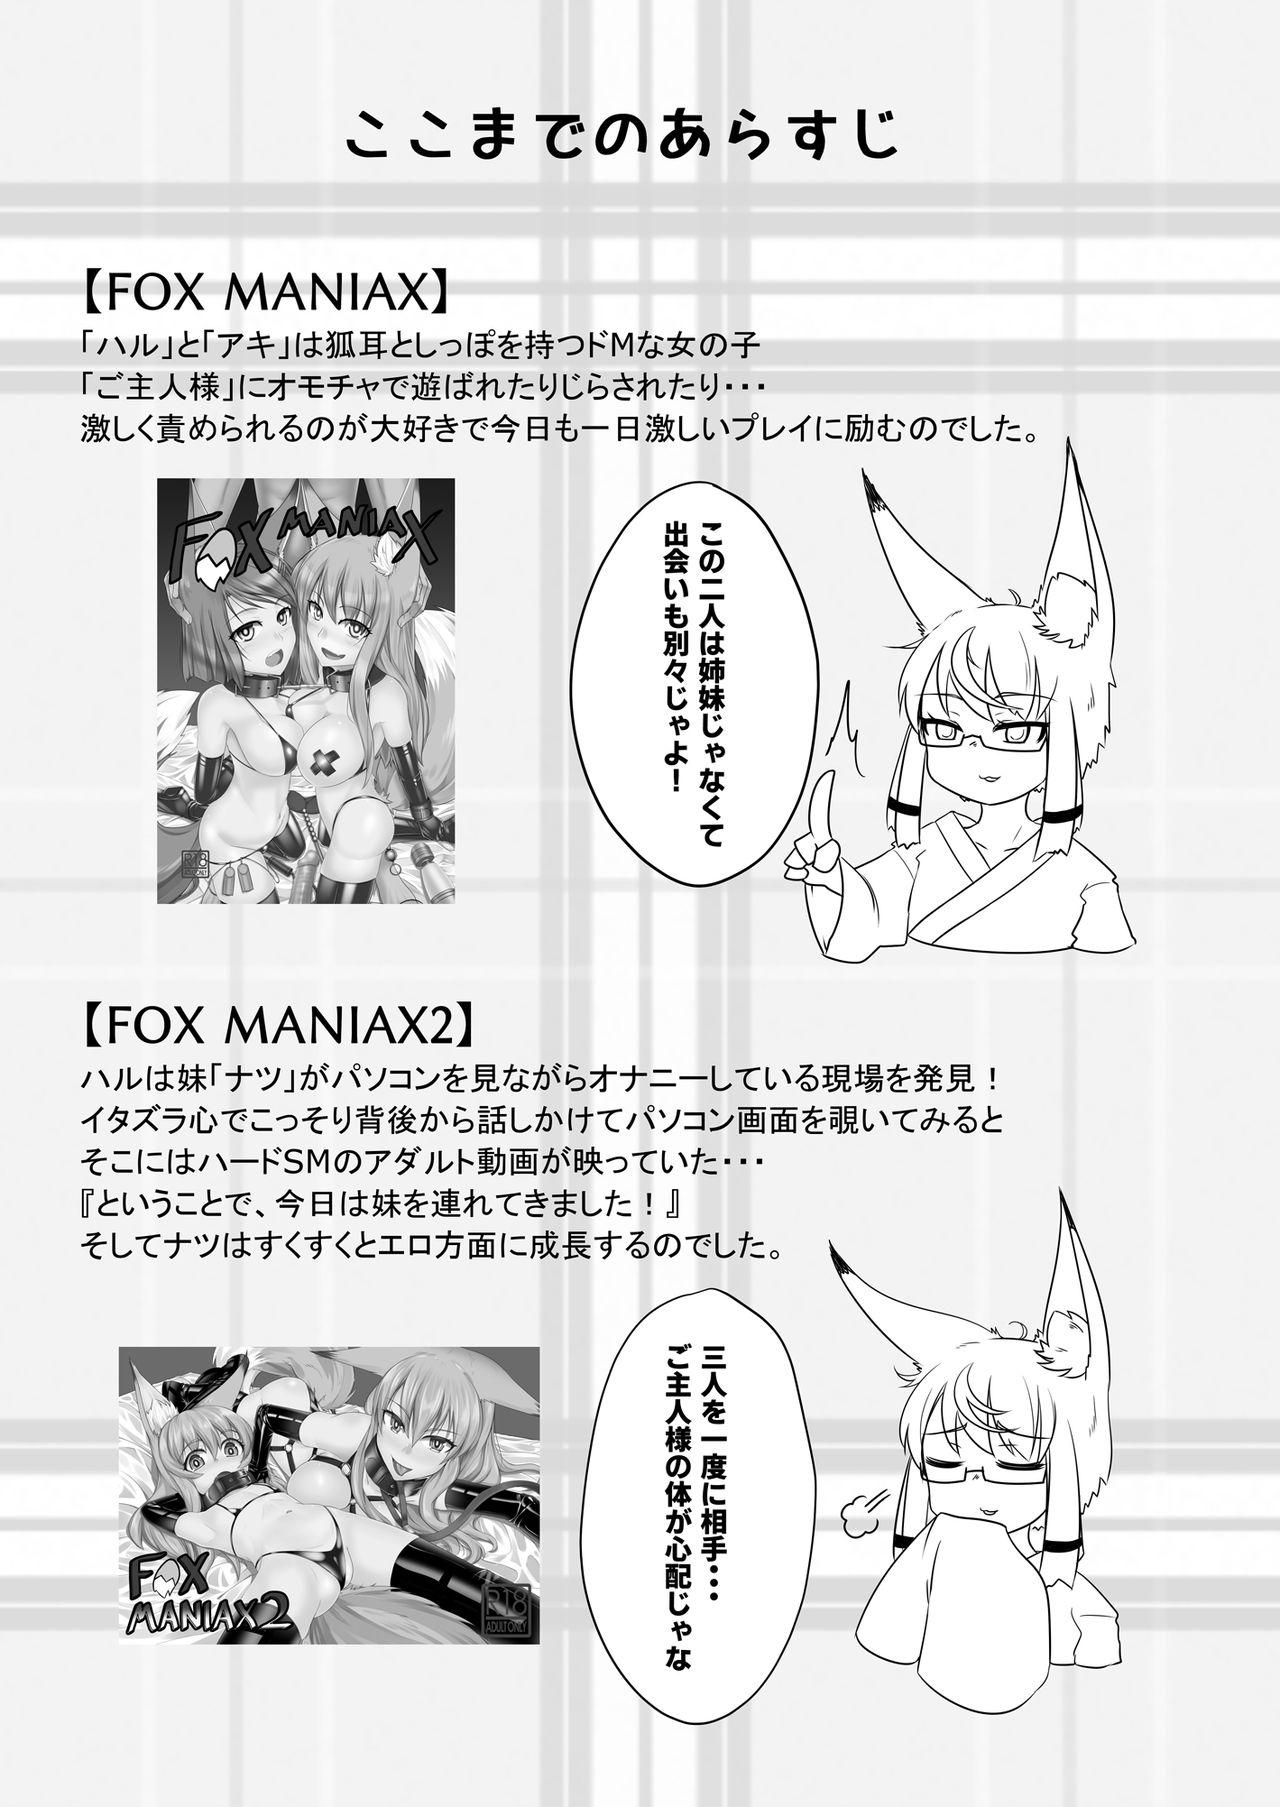 Dicks FOX MANIAX3 - Original Spreading - Page 2